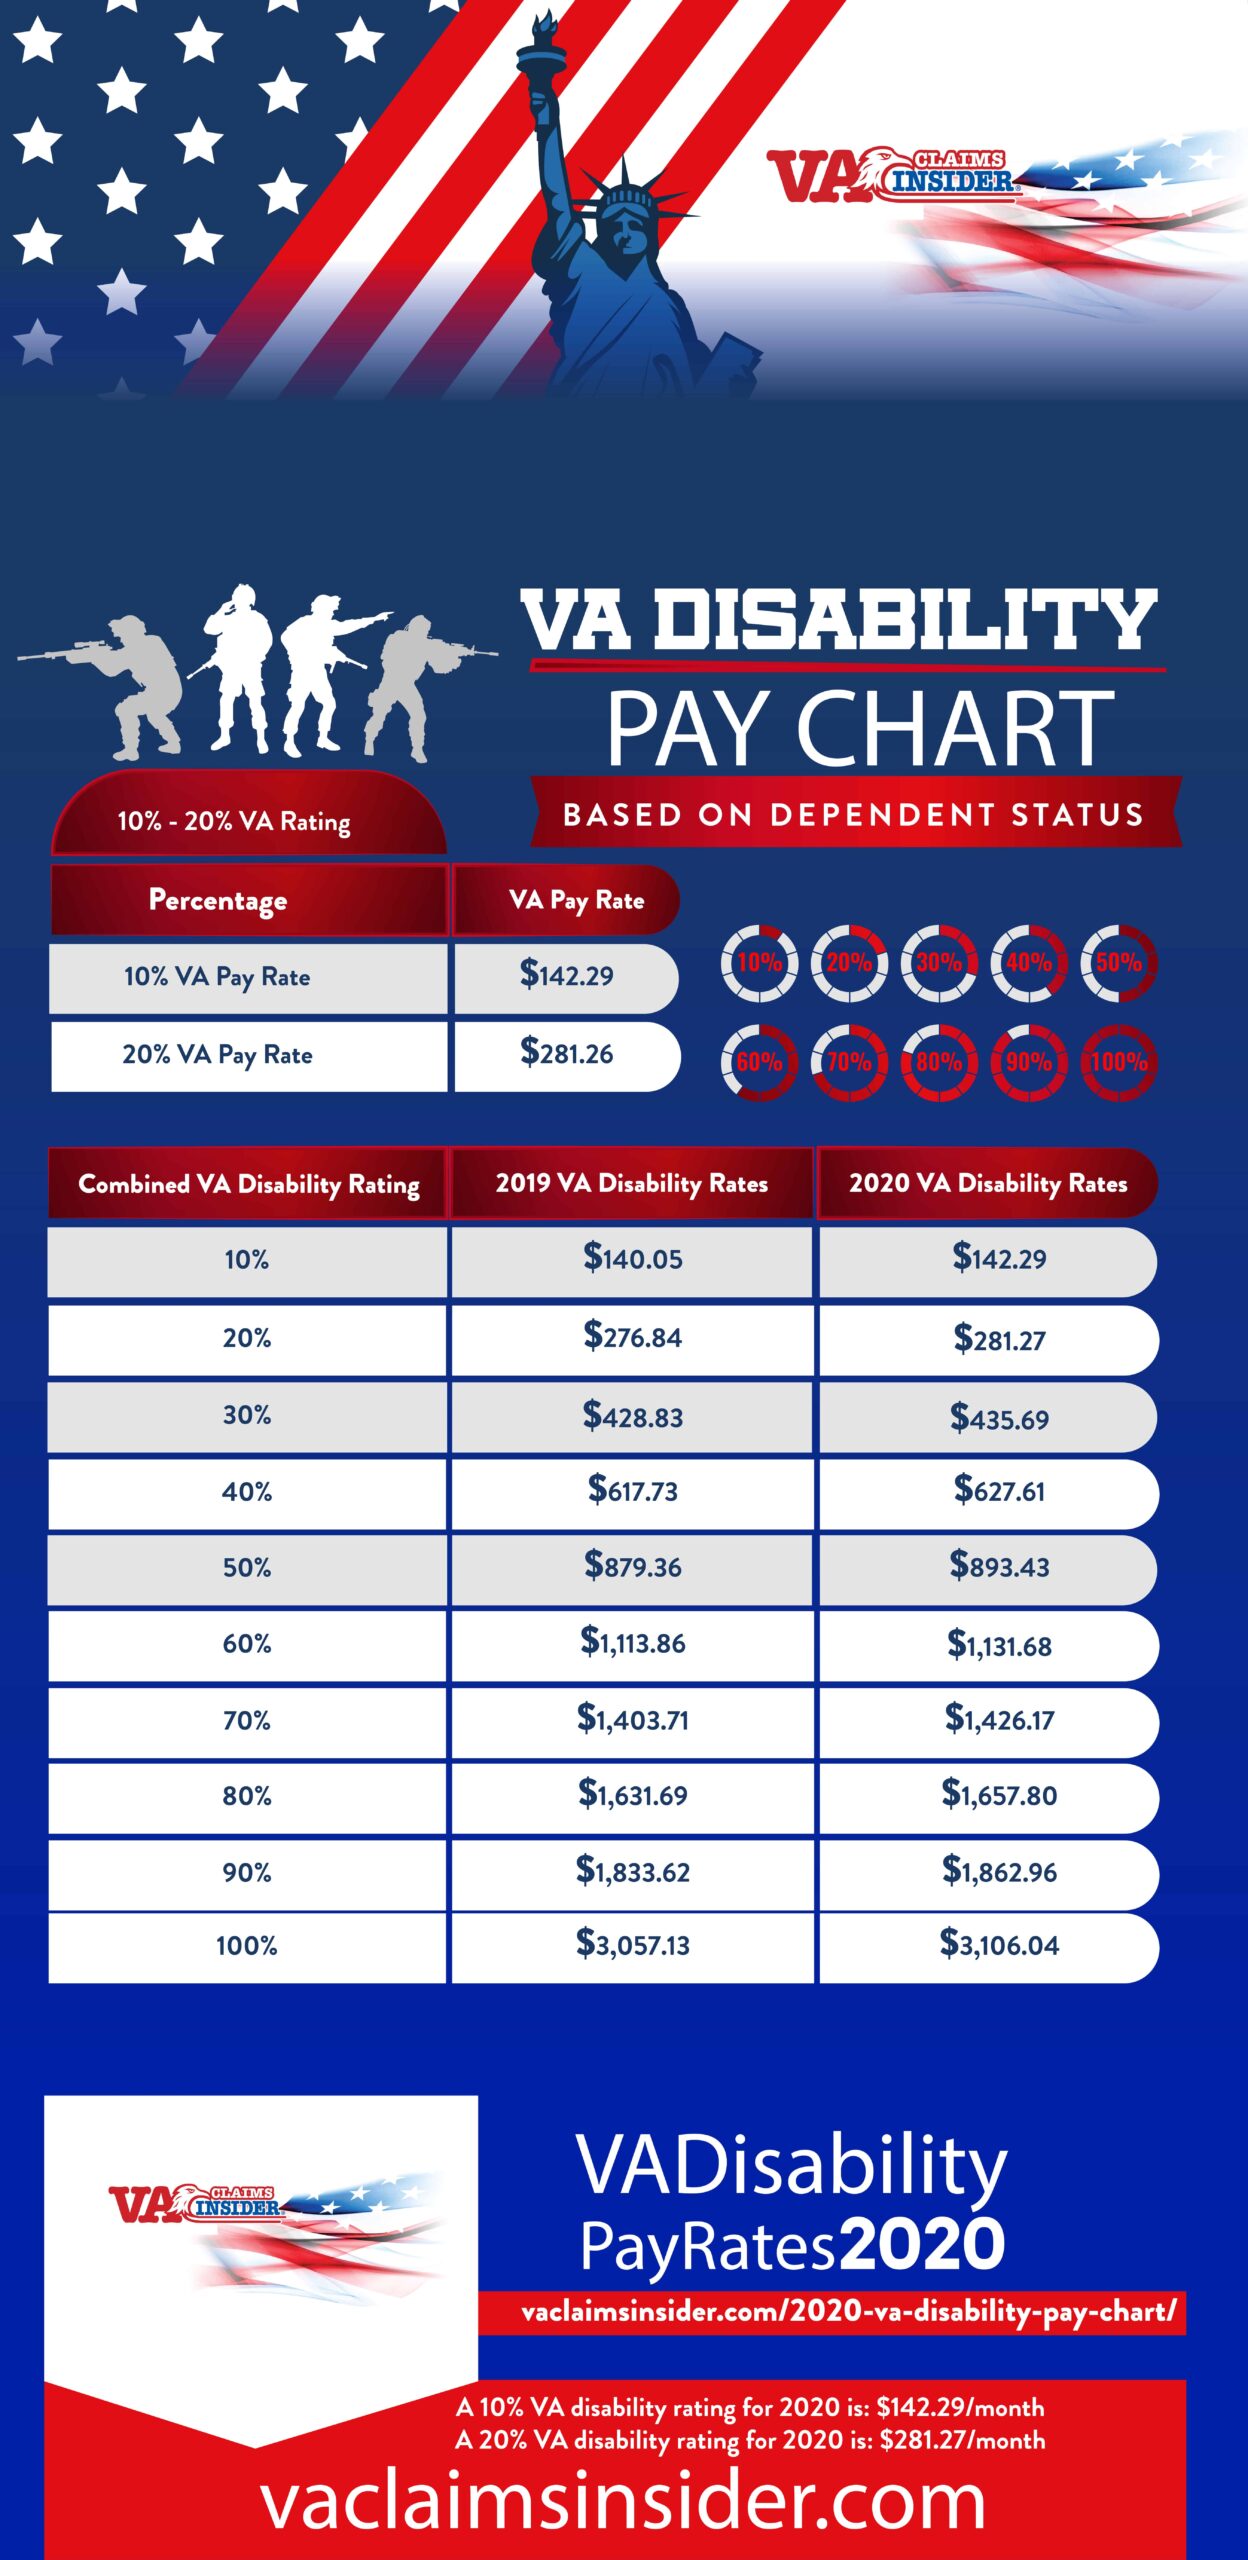 2020 VA Disability Pay Chart 2020 VA Disability Pay Chart